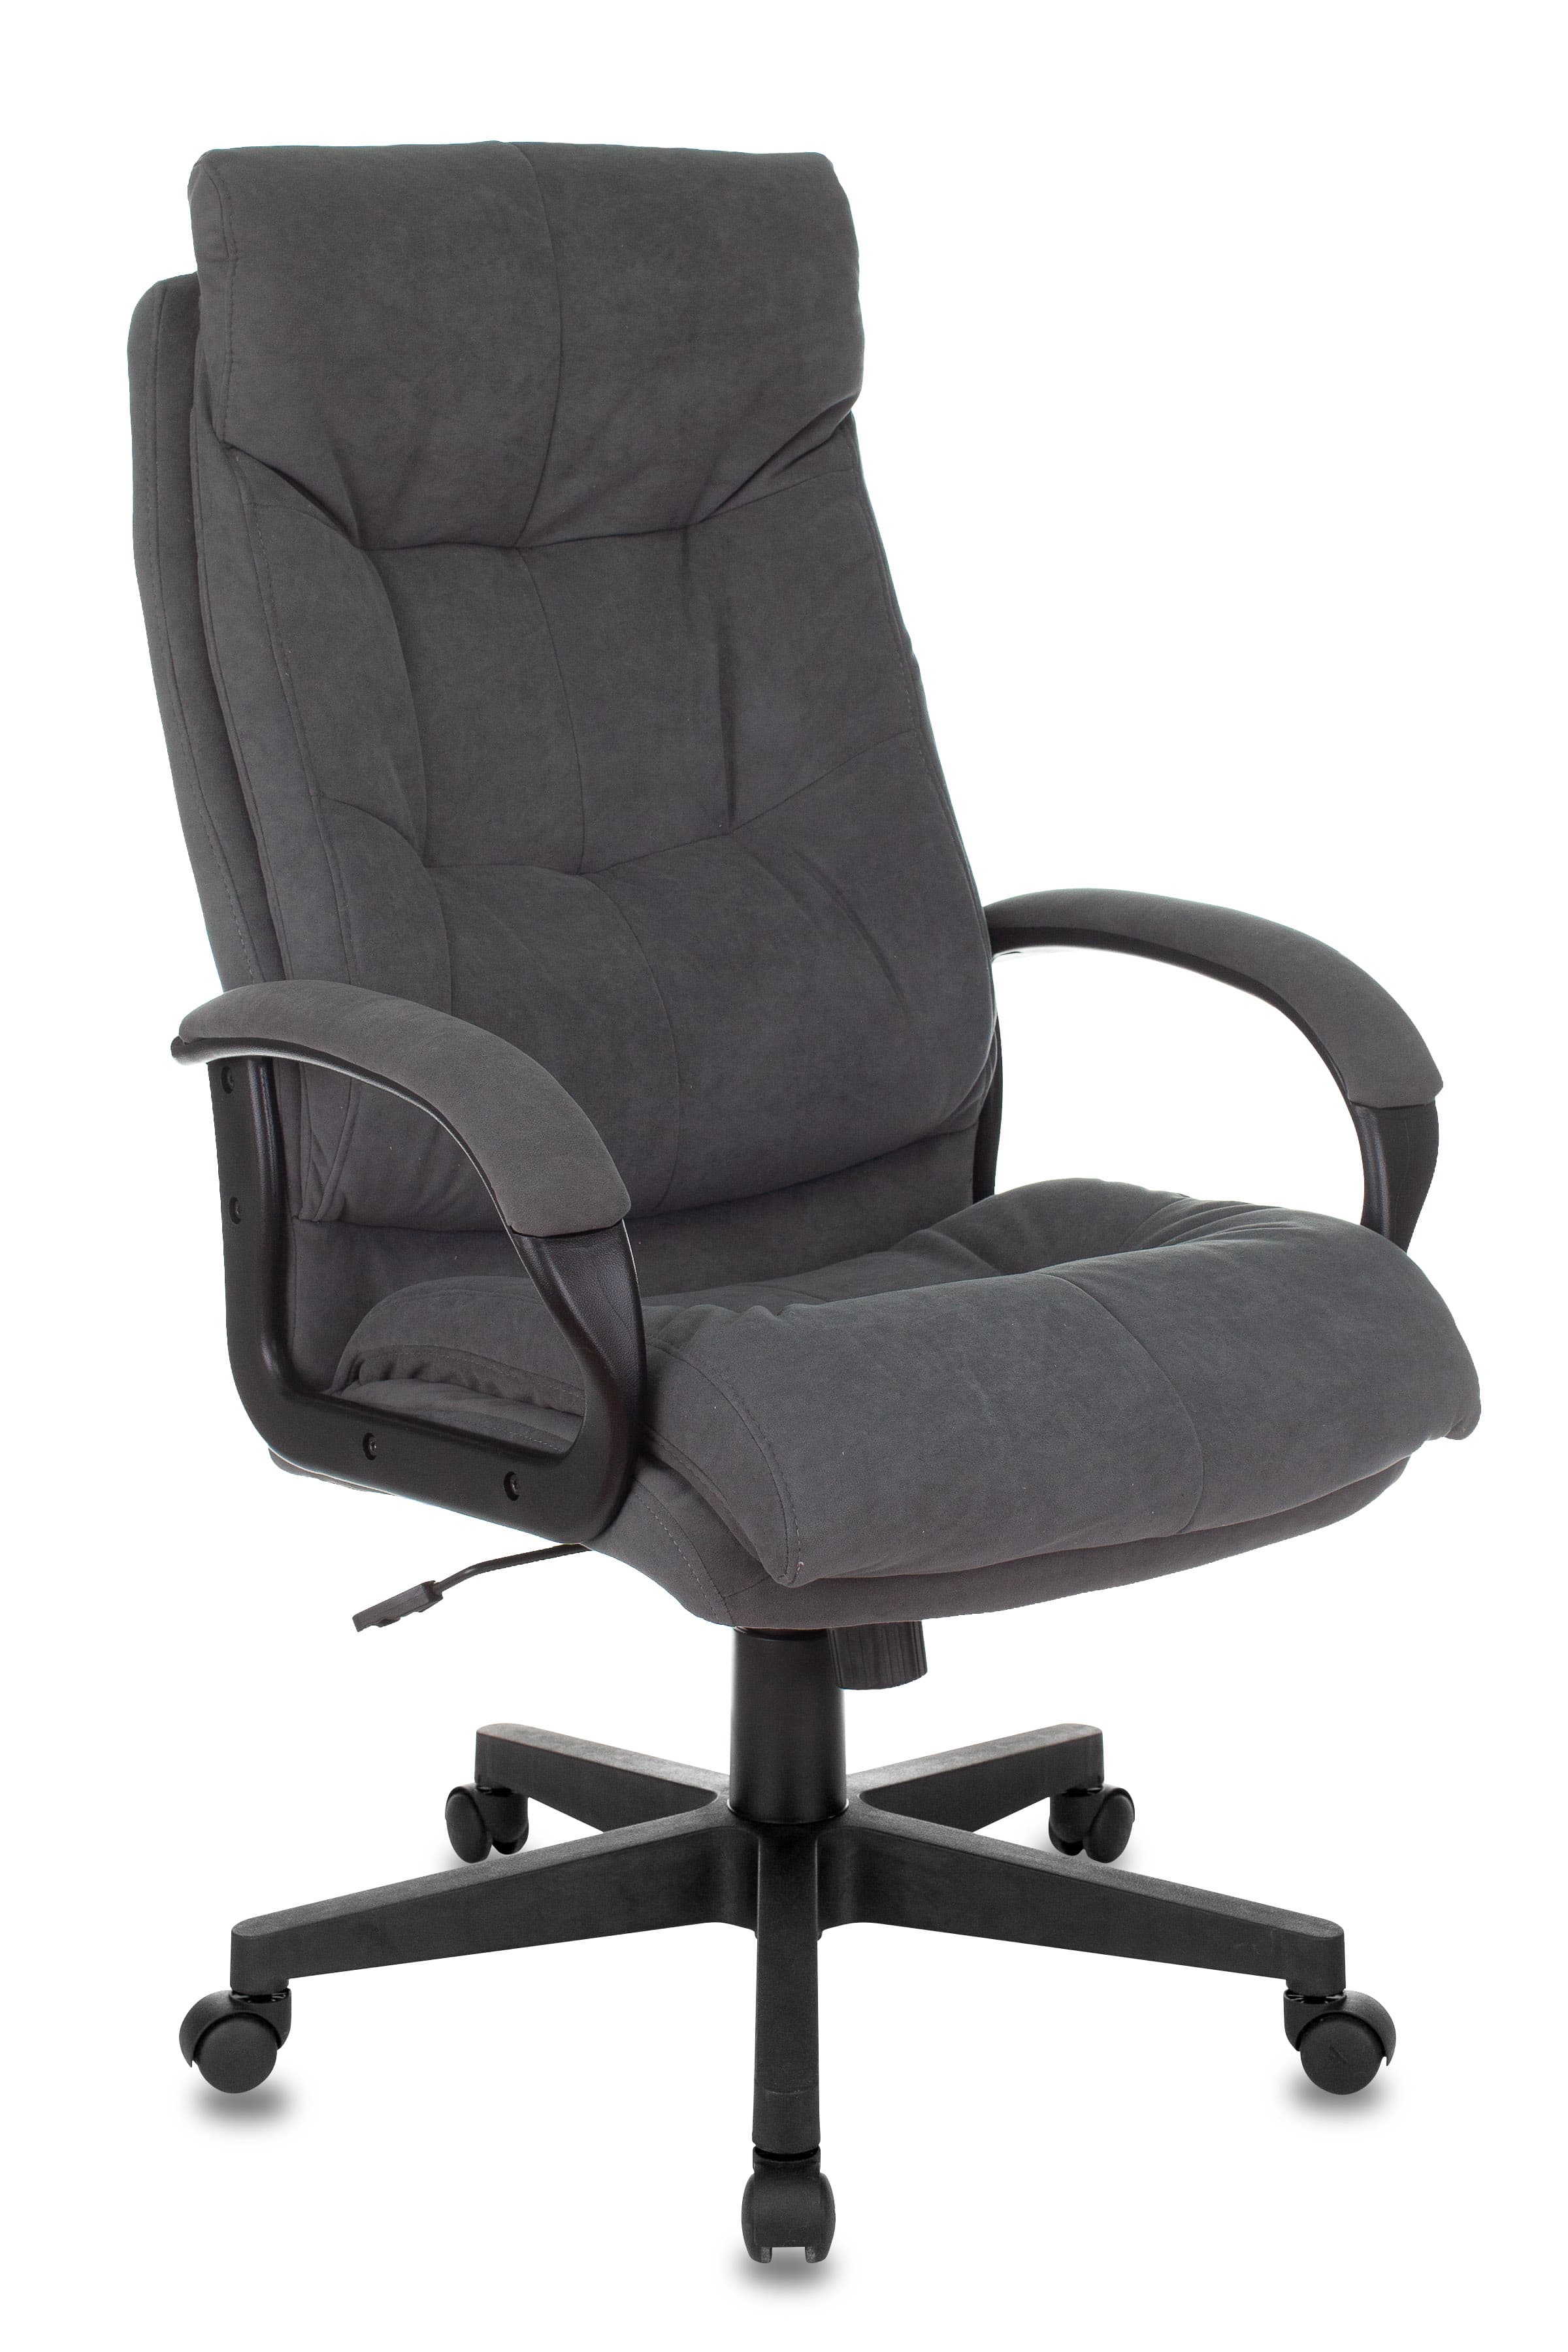 Компьютерное кресло для руководителя офисное CH-824 Fabric обивка ткань серый Alfa 44 крестовина пластик